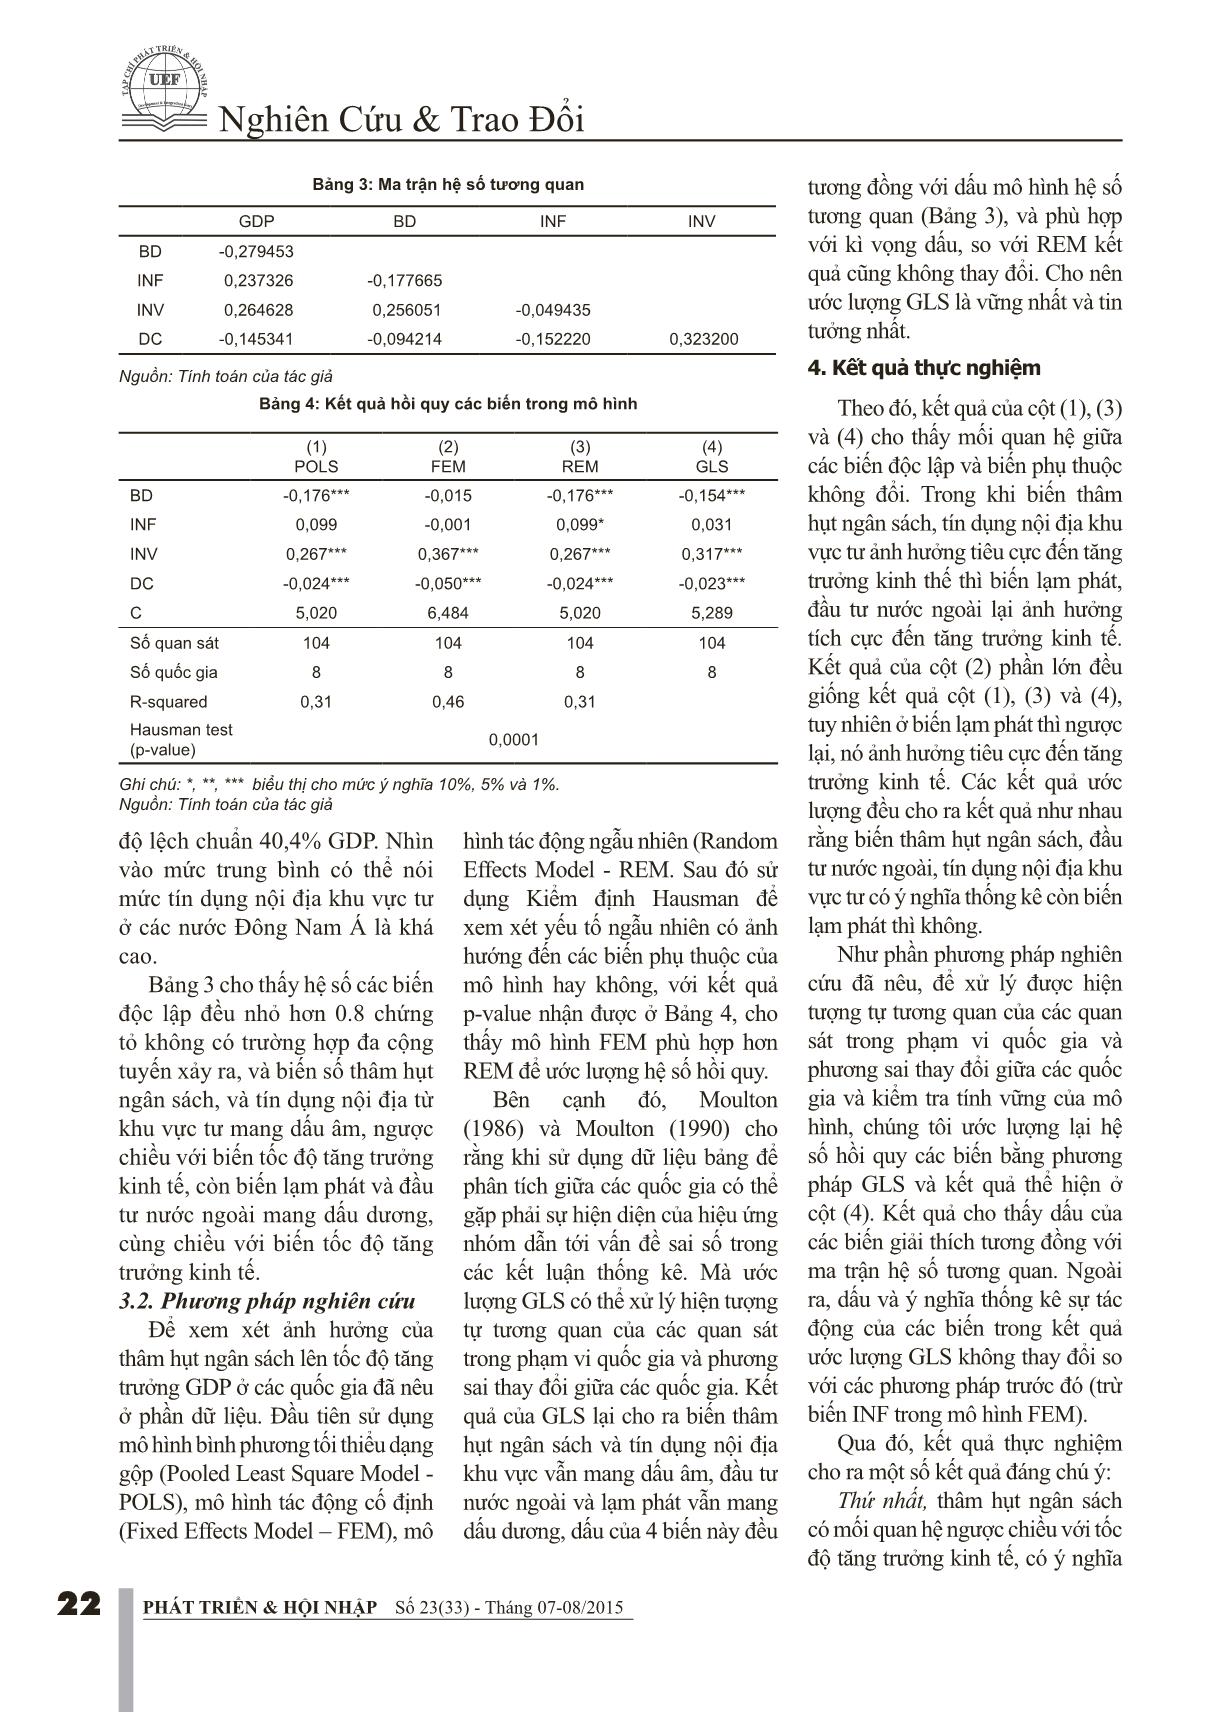 Tác động của thâm hụt ngân sách đến tăng trưởng kinh tế: Bằng chứng ở các nước Đông Nam Á trang 4